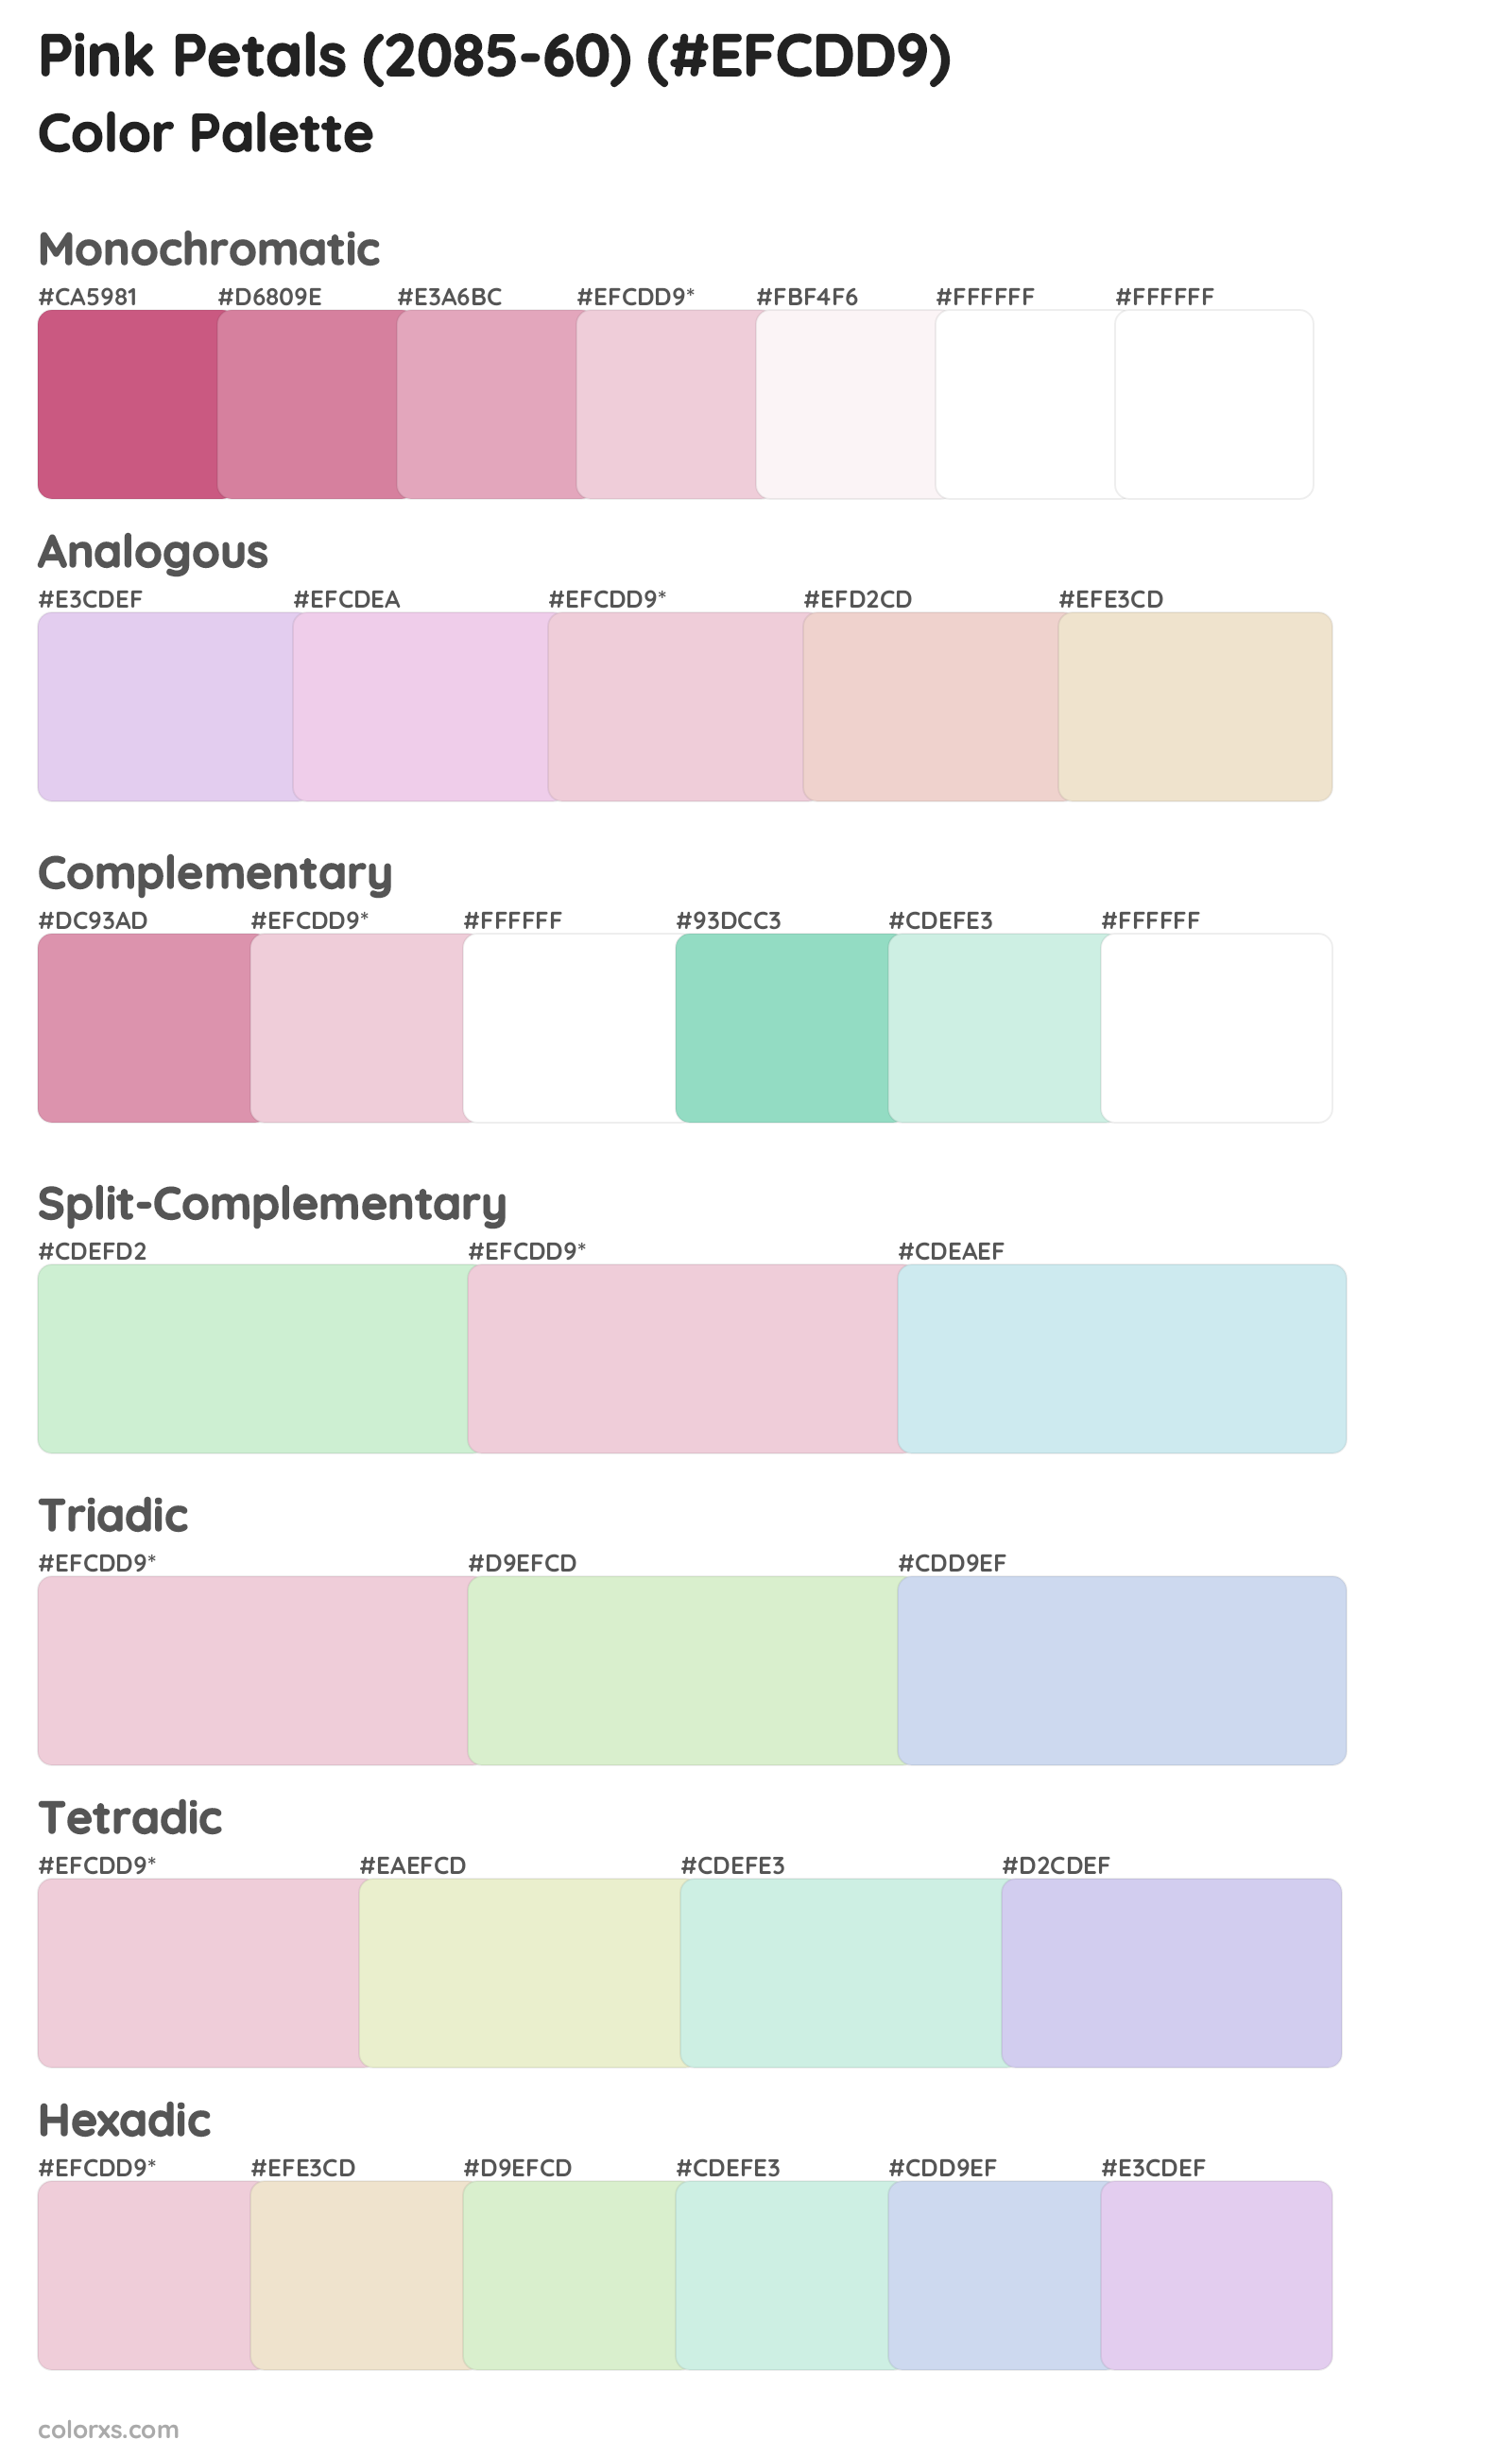 Pink Petals (2085-60) Color Scheme Palettes